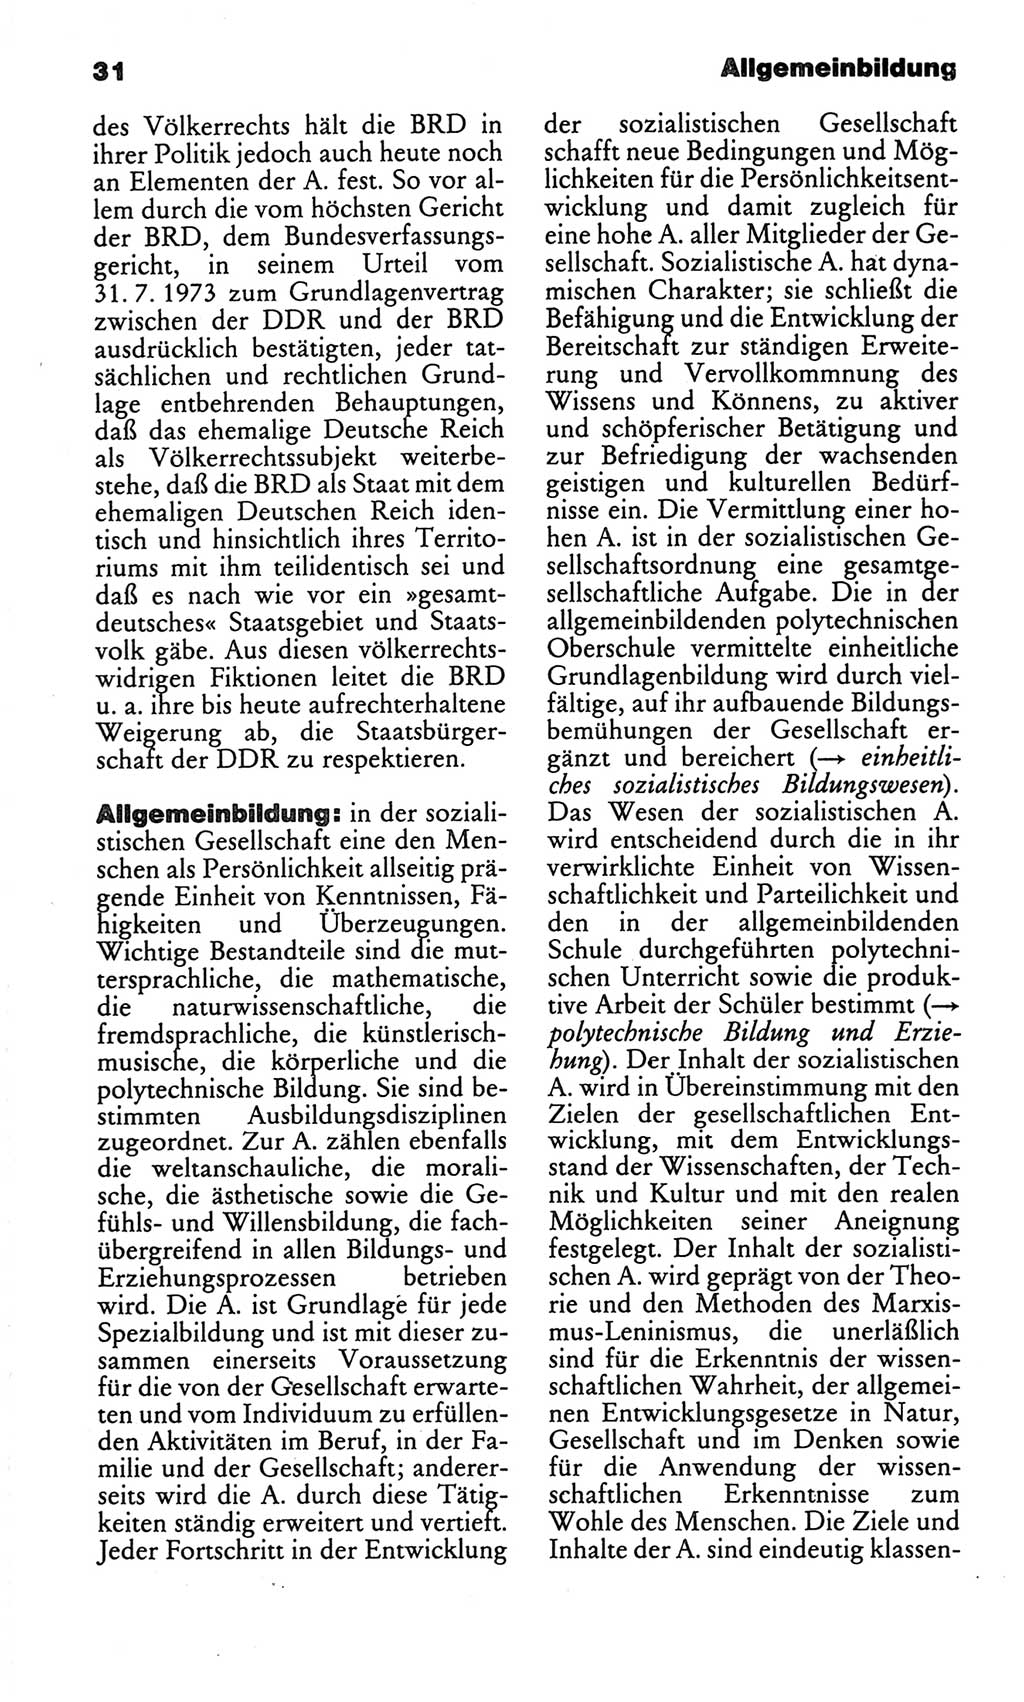 Kleines politisches Wörterbuch [Deutsche Demokratische Republik (DDR)] 1986, Seite 31 (Kl. pol. Wb. DDR 1986, S. 31)